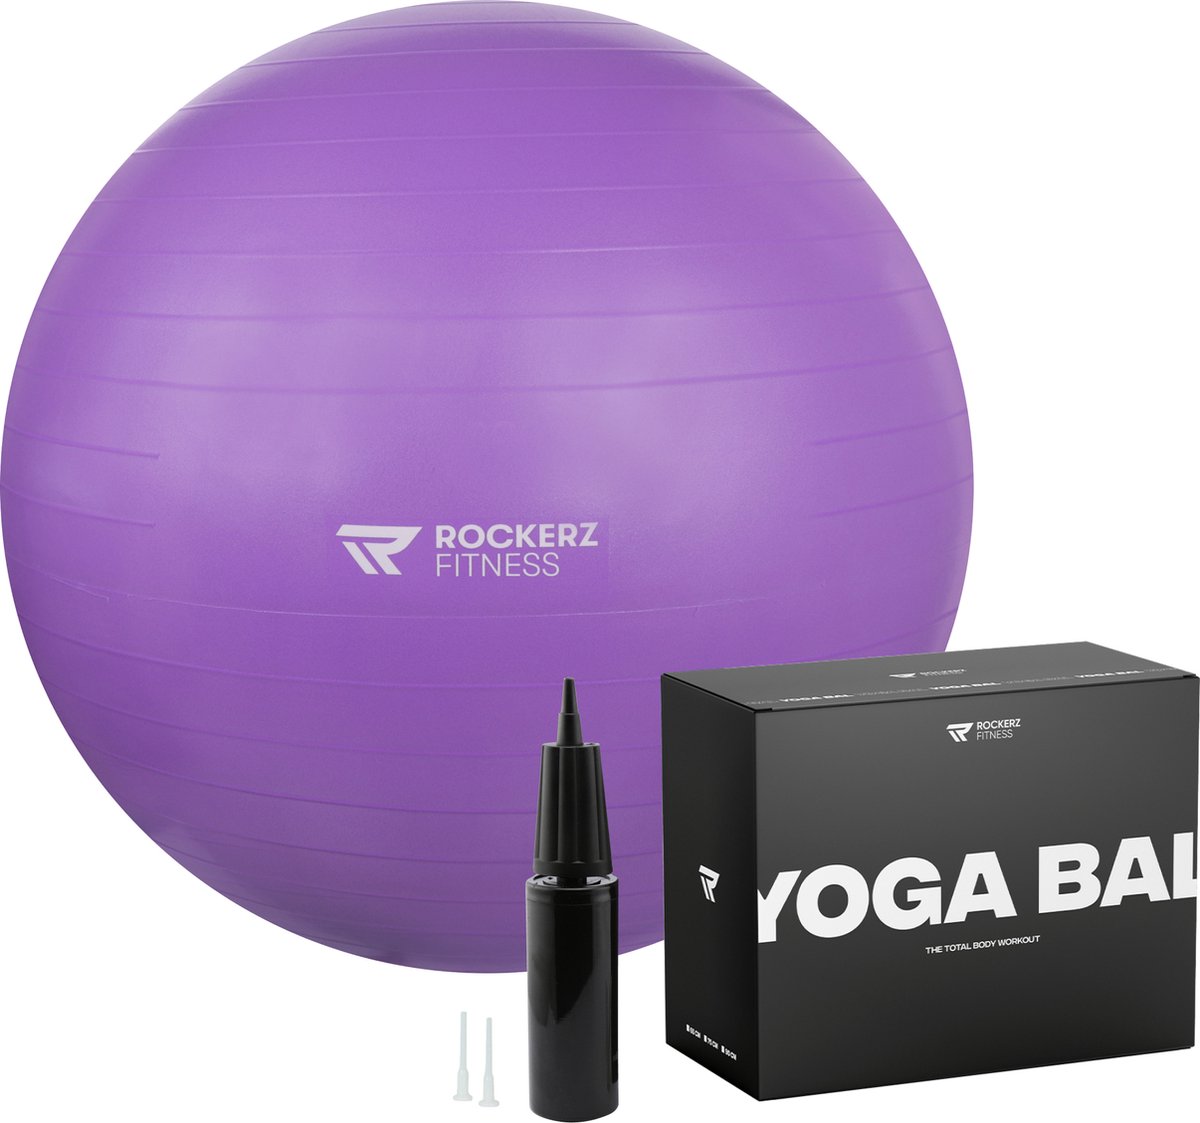 Rockerz Yoga bal inclusief pomp - Fitness bal - Zwangerschapsbal - 75 cm - 1250g - Stevig & duurzaam - Hoogste kwaliteit - Paars